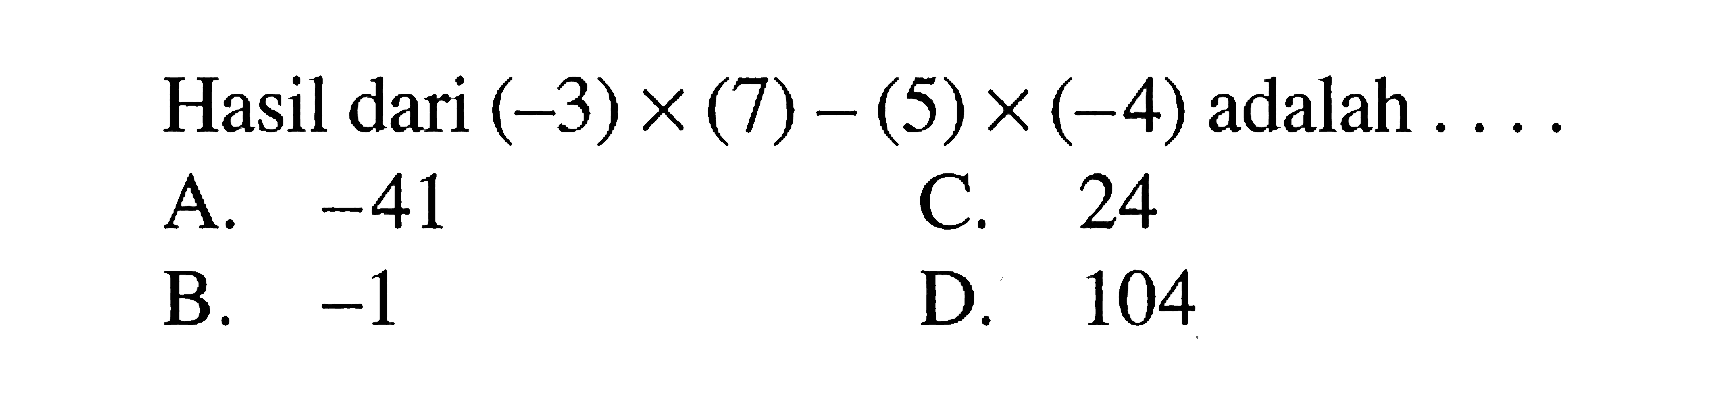 Hasil dari (-3) x (7) - (5) x (-4) adalah.... A. -41 C. 24 B. -1 D. 104